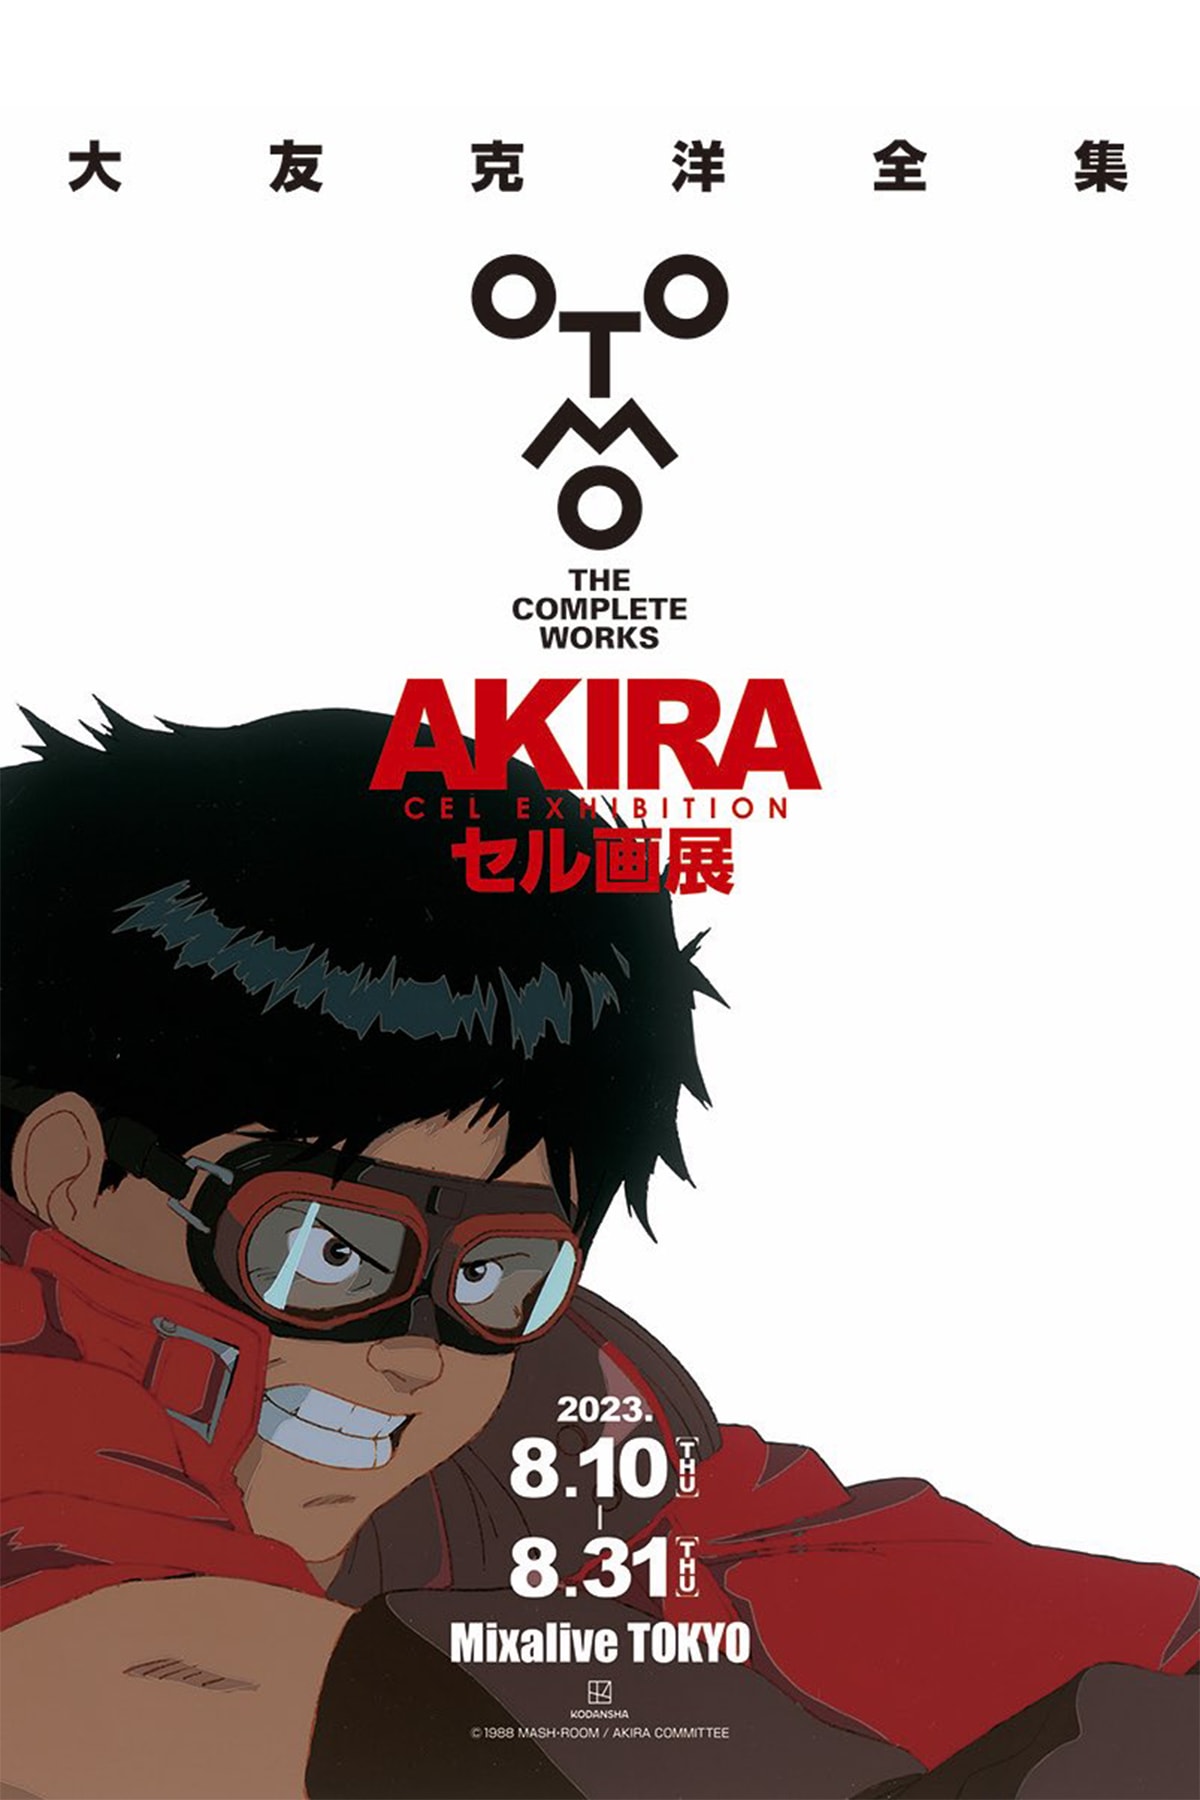 大友克洋による初の『AKIRA』セル画展が東京・池袋にて開催 akira cell drawing exhibition katsuhiro otomo mixalive tokyo info